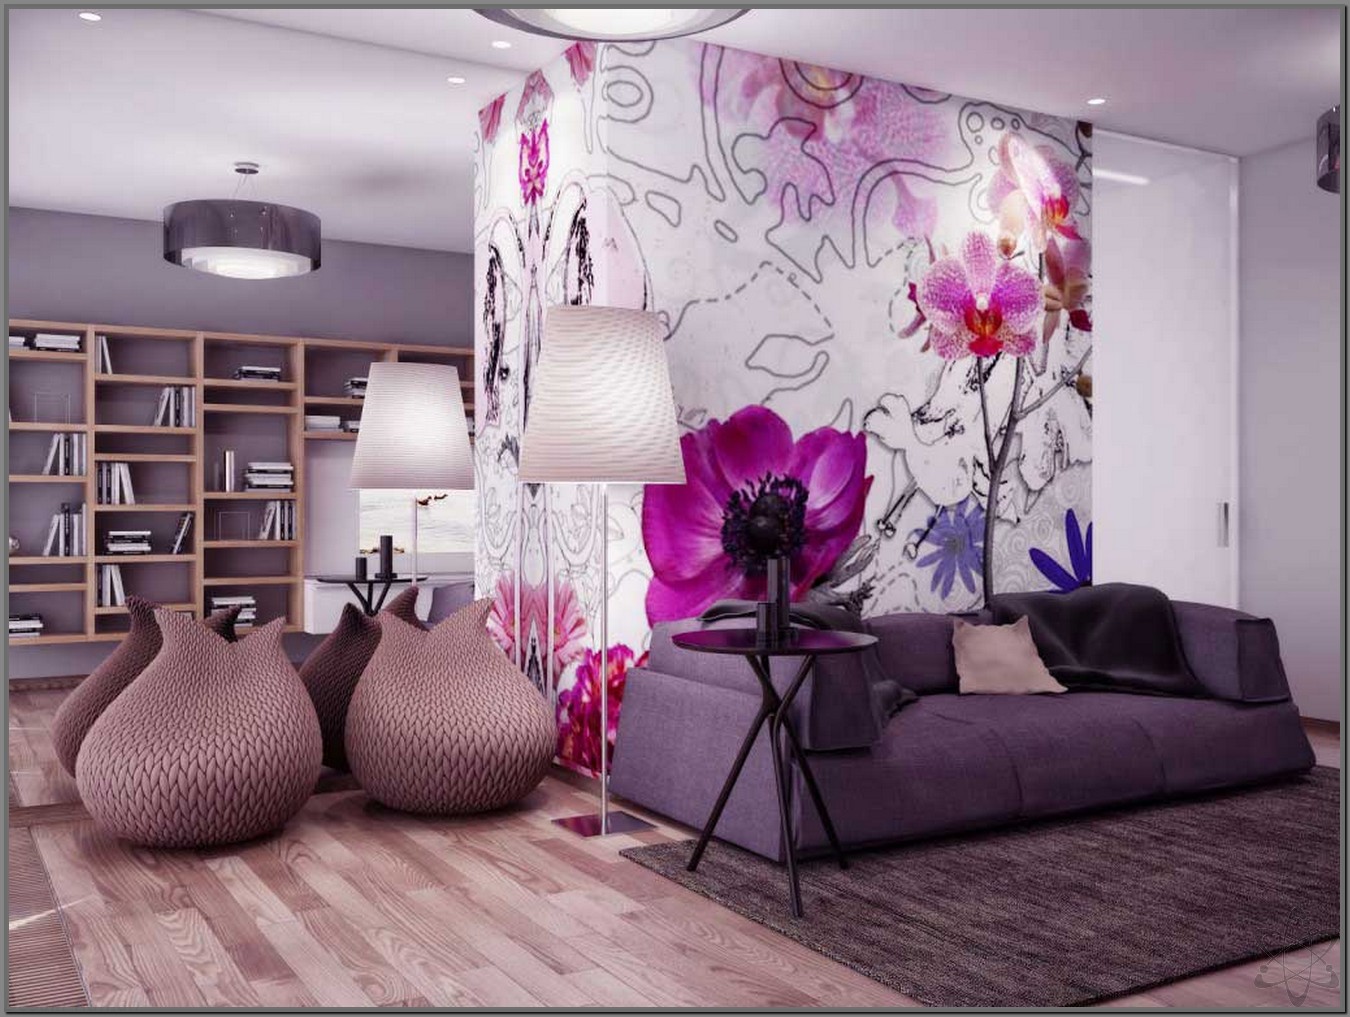 50 Contoh Wallpaper Dinding Ruang Tamu Minimalis Home Design Interior